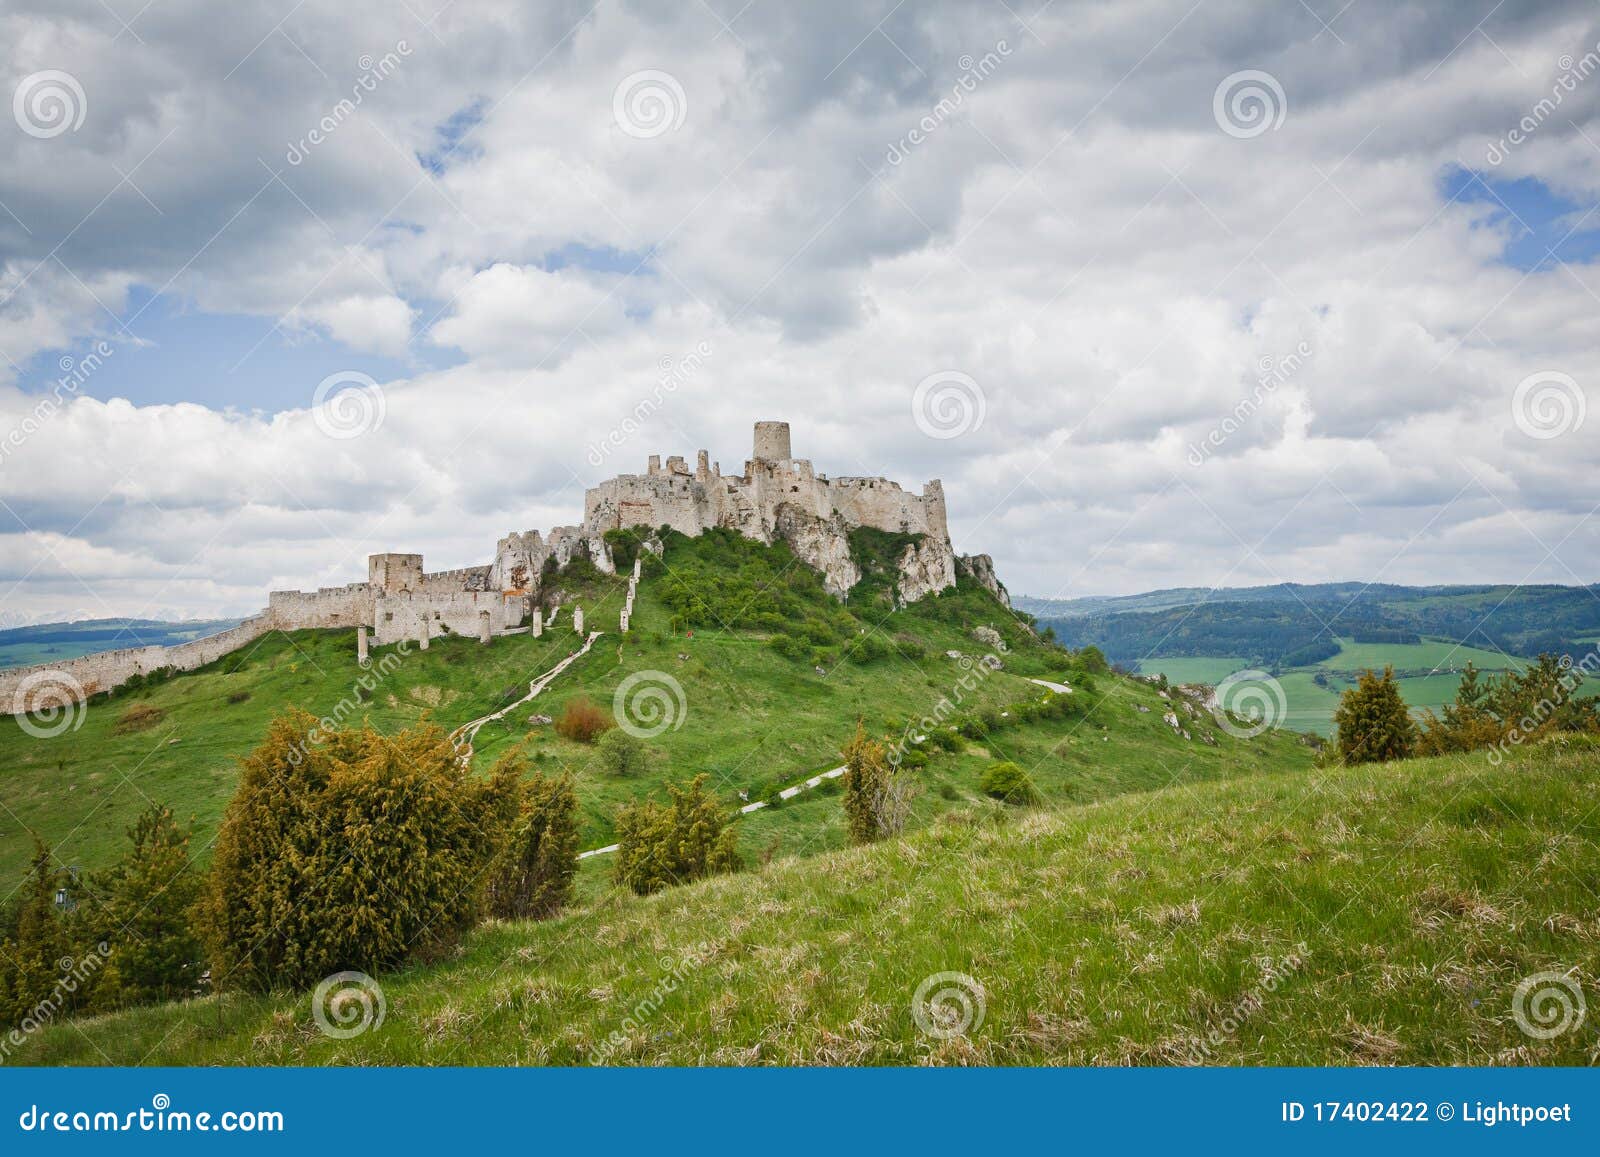 Het kasteel van Spissky hrad in Slowakije, de werelderfenis vermeld monument van Unesco